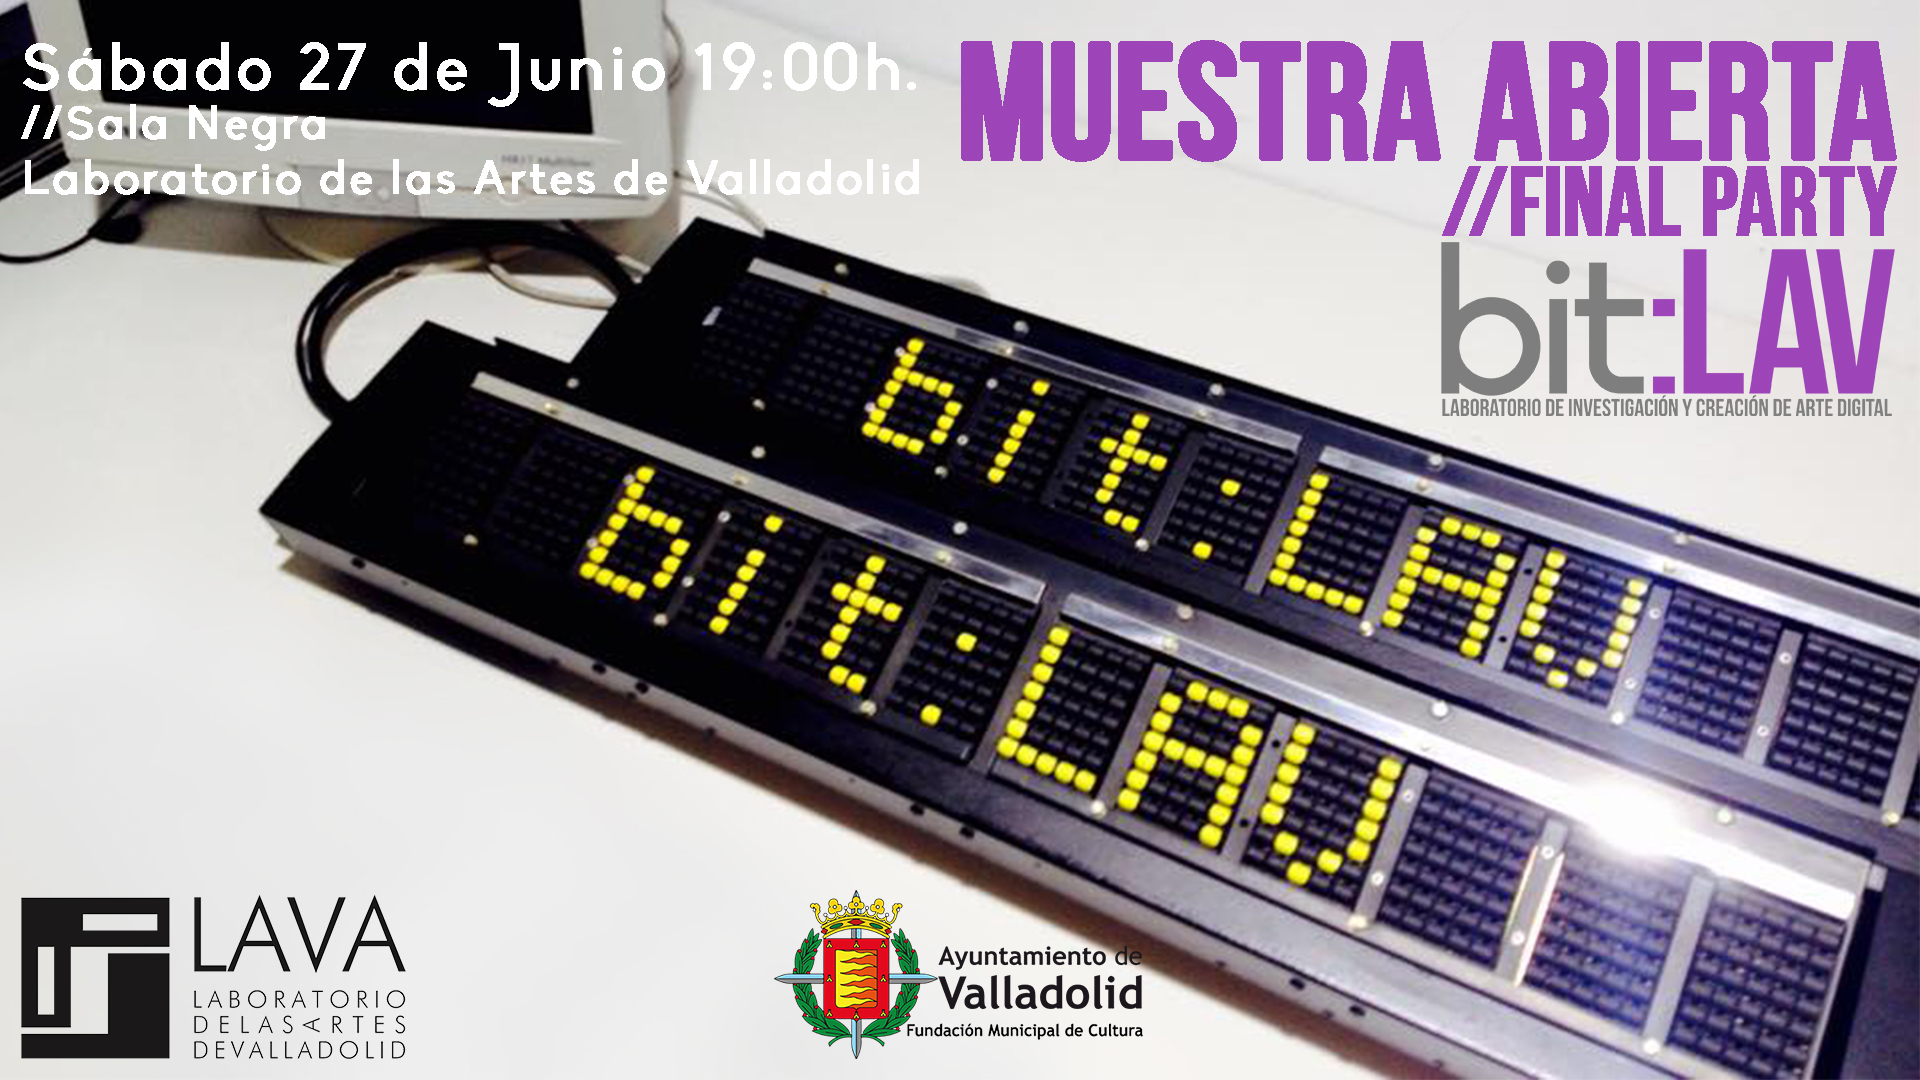 Clausura del bit:LAV este sábado 27 de Junio en Valladolid con una interesante Muestra Abierta.